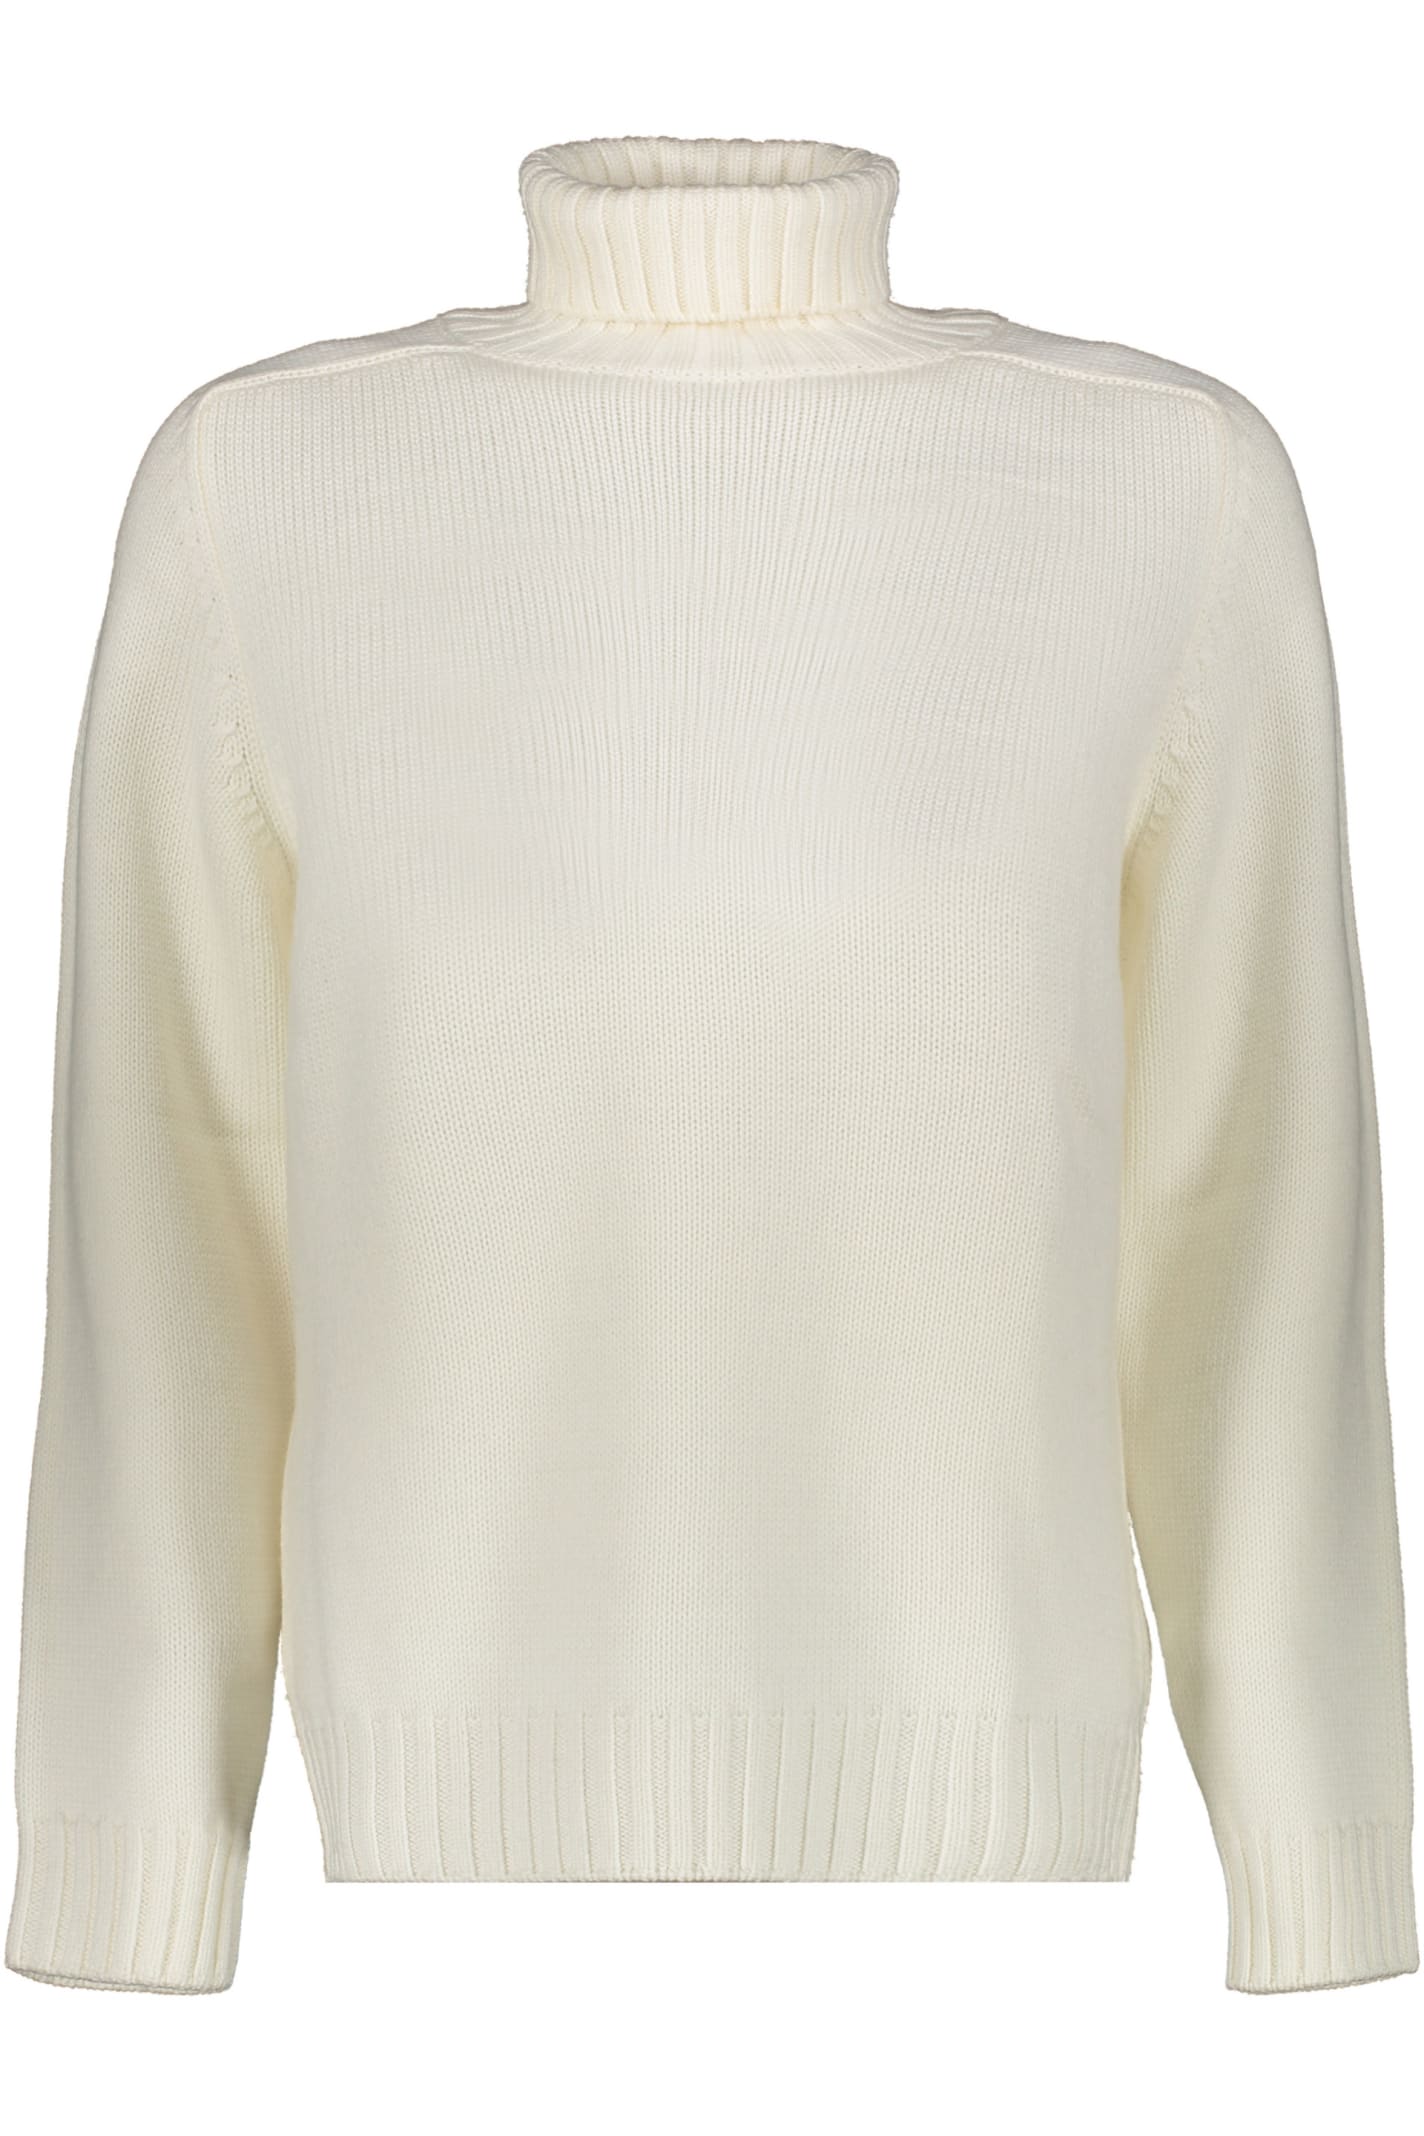 Dondup Wool Turtleneck Sweater In White